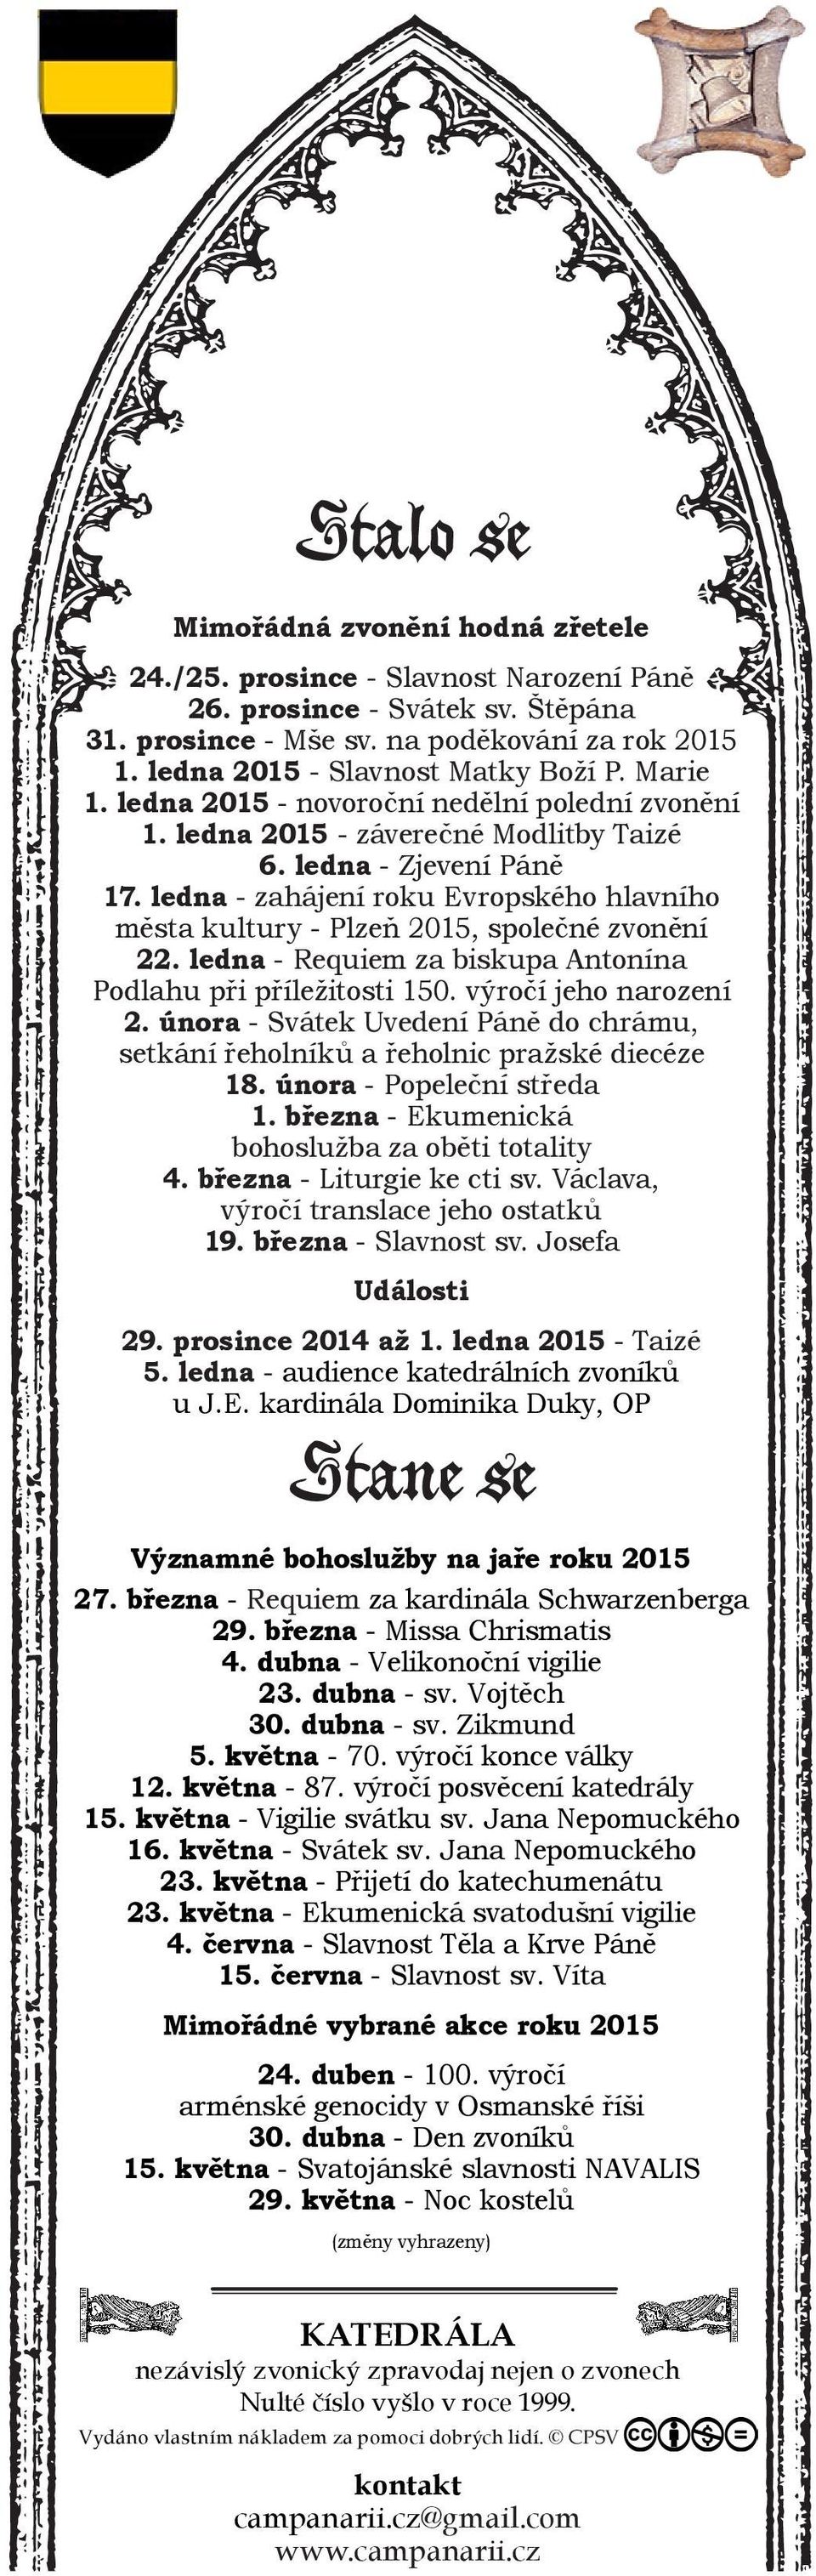 ledna - zahájení roku Evropského hlavního města kultury - Plzeň 2015, společné zvonění 22. ledna - Requiem za biskupa Antonína Podlahu při příležitosti 150. výročí jeho narození 2.